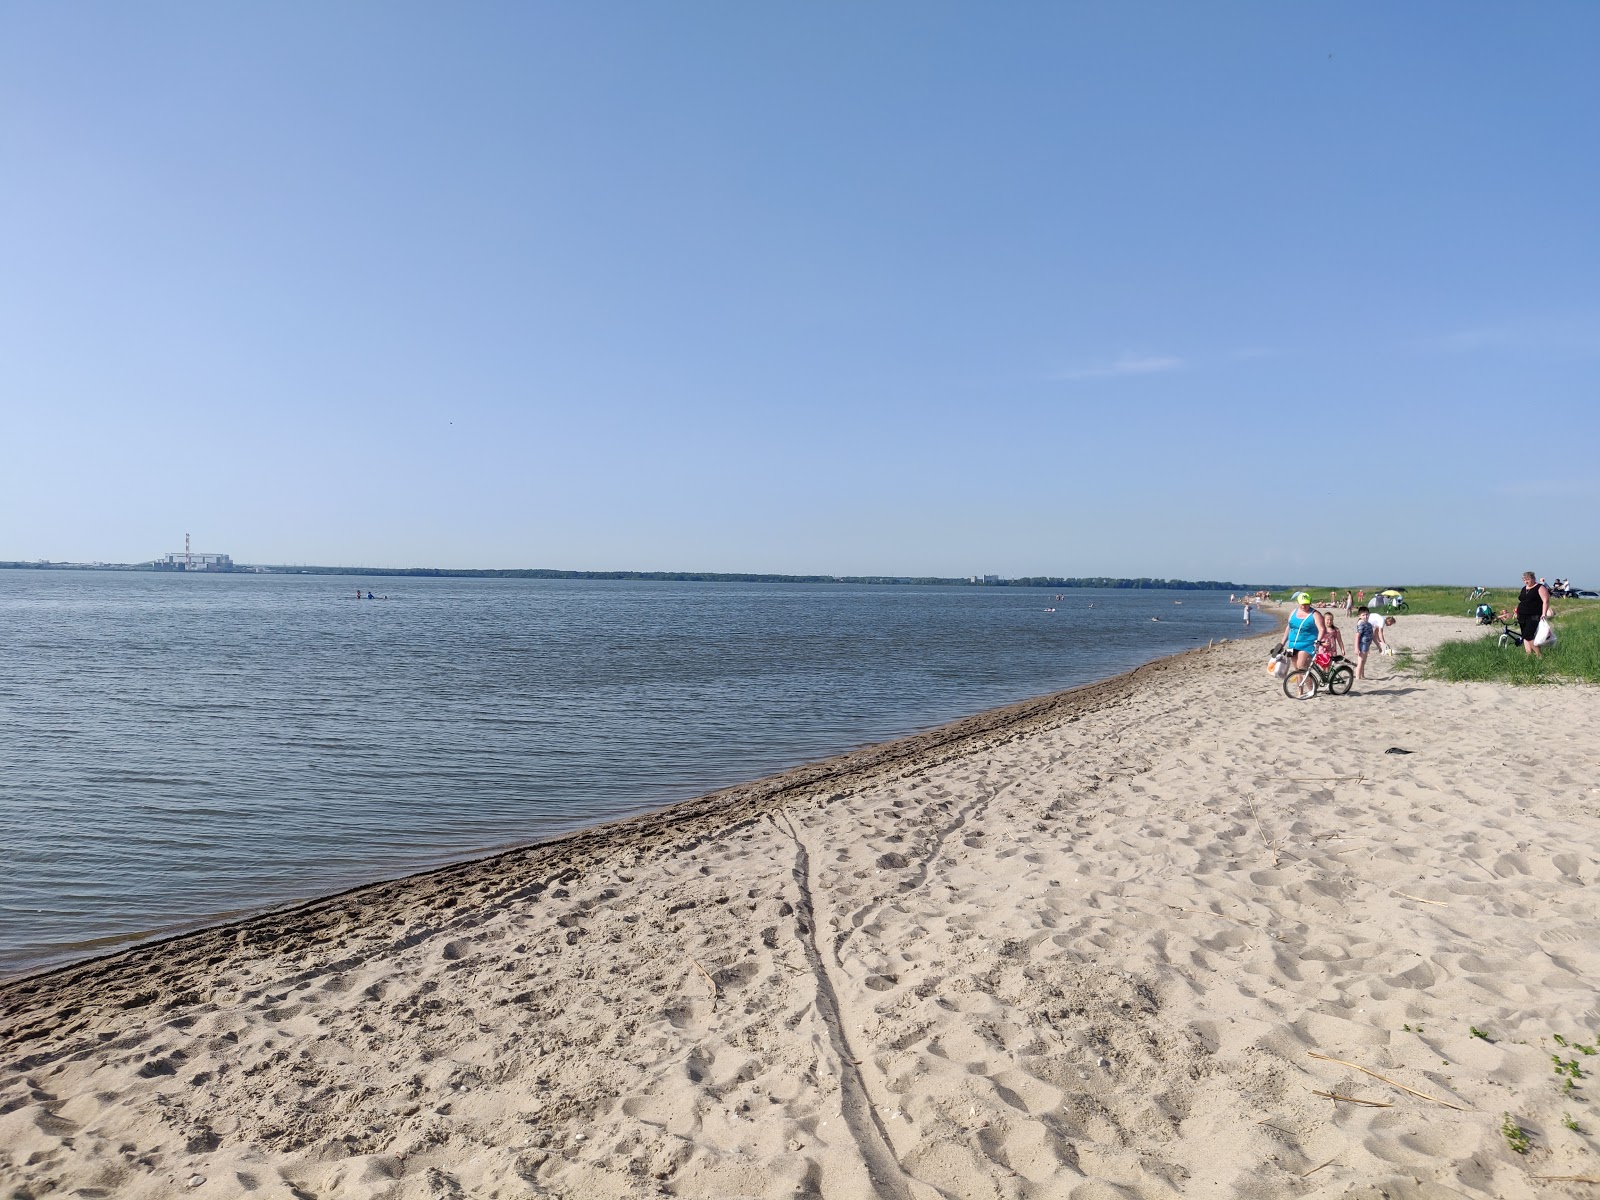 Poberezh'ye beach'in fotoğrafı parlak kum yüzey ile